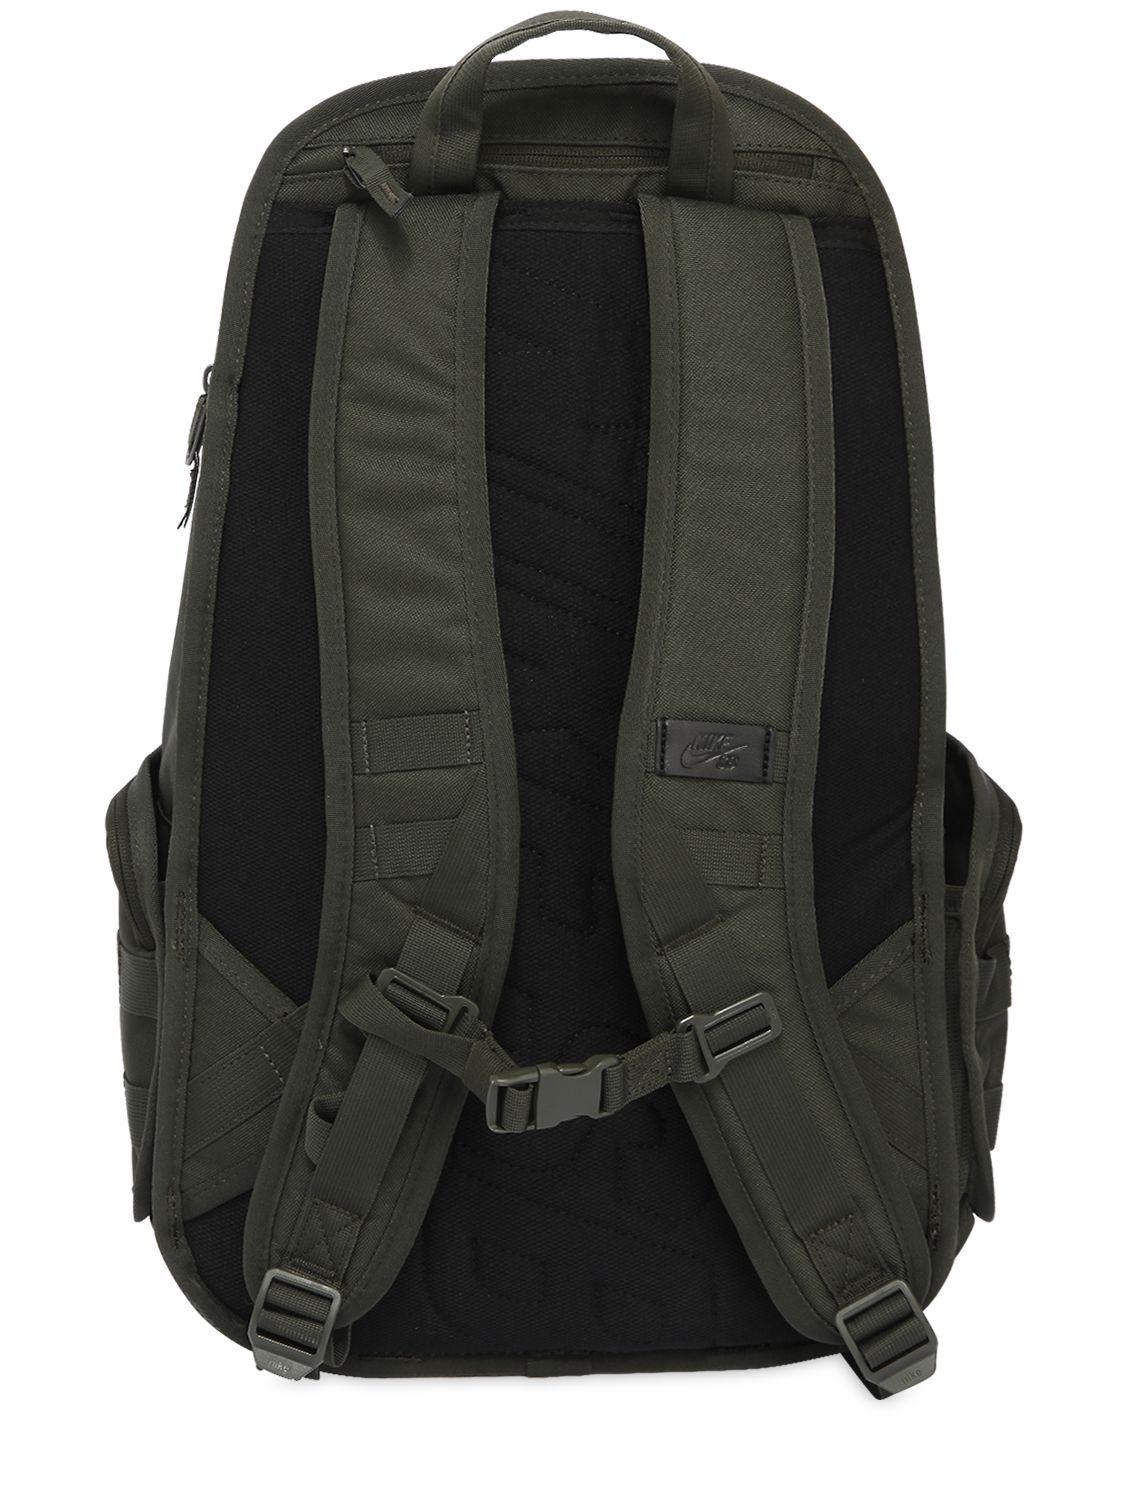 nike army backpack